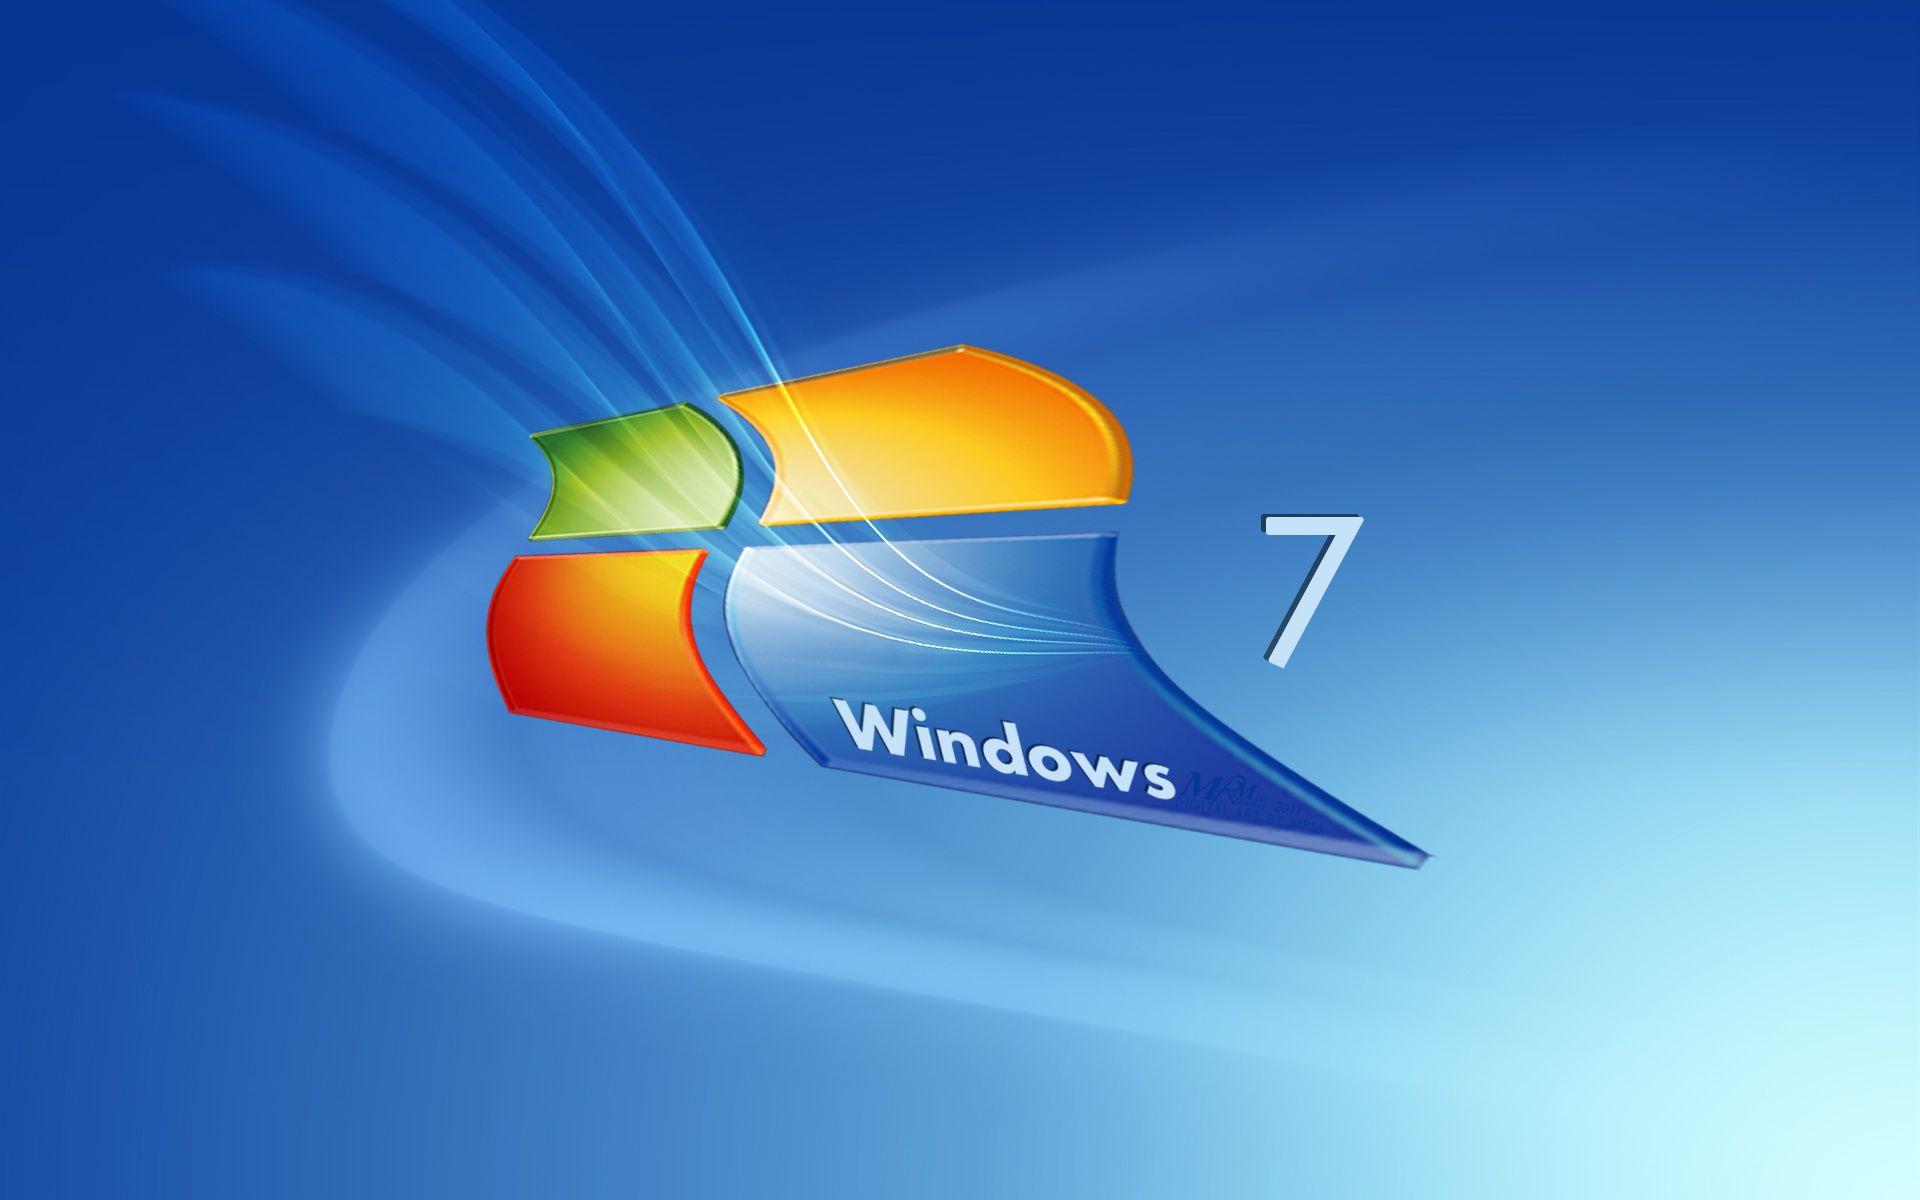 Wallpaper Windows 7 Hd 3d For Laptop Image Num 24